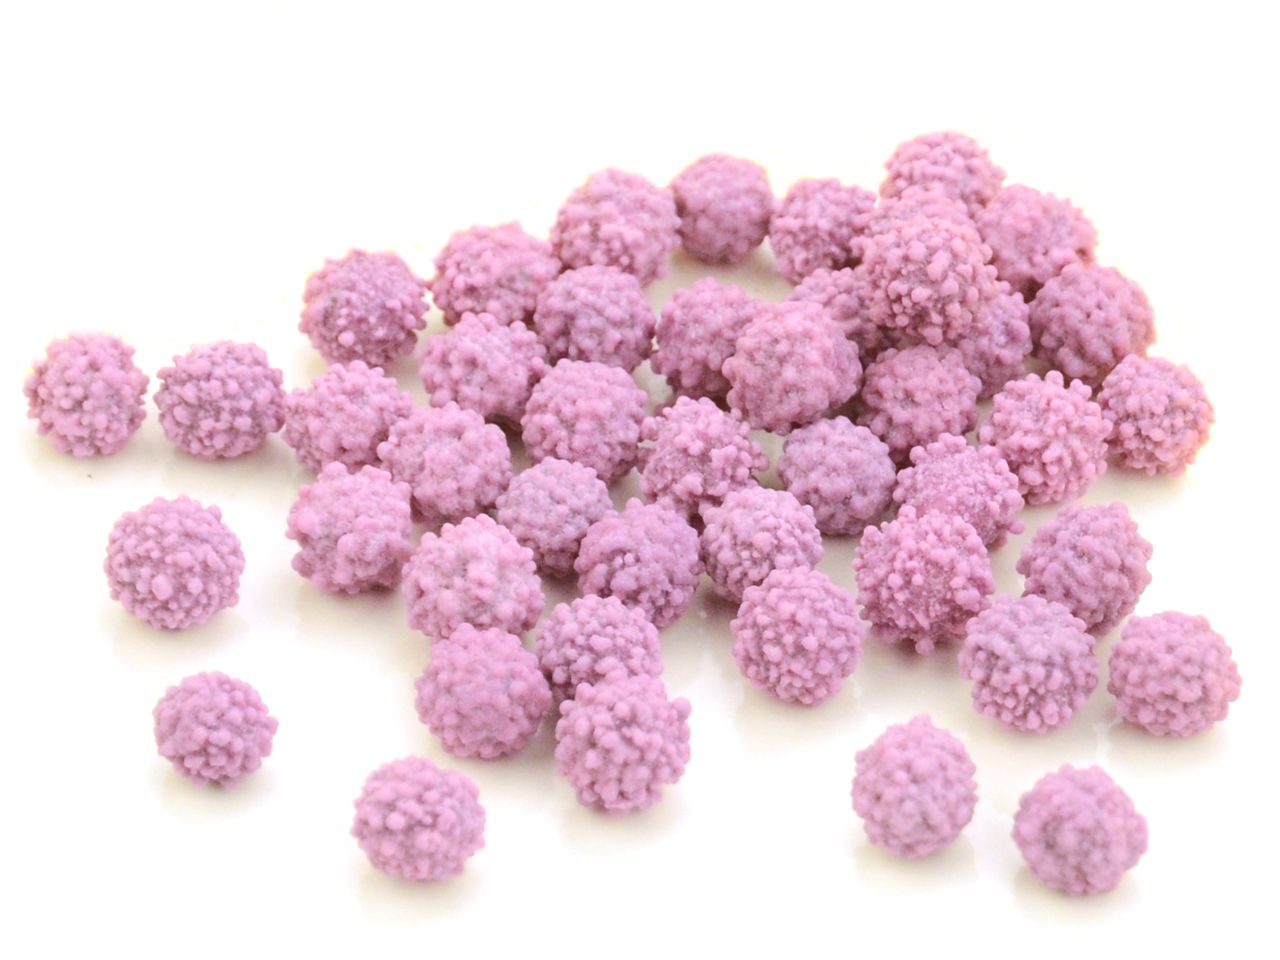 Streusel-Perlen-Mix-Zuckerstreusel-Sprinkles-Violett-Happy